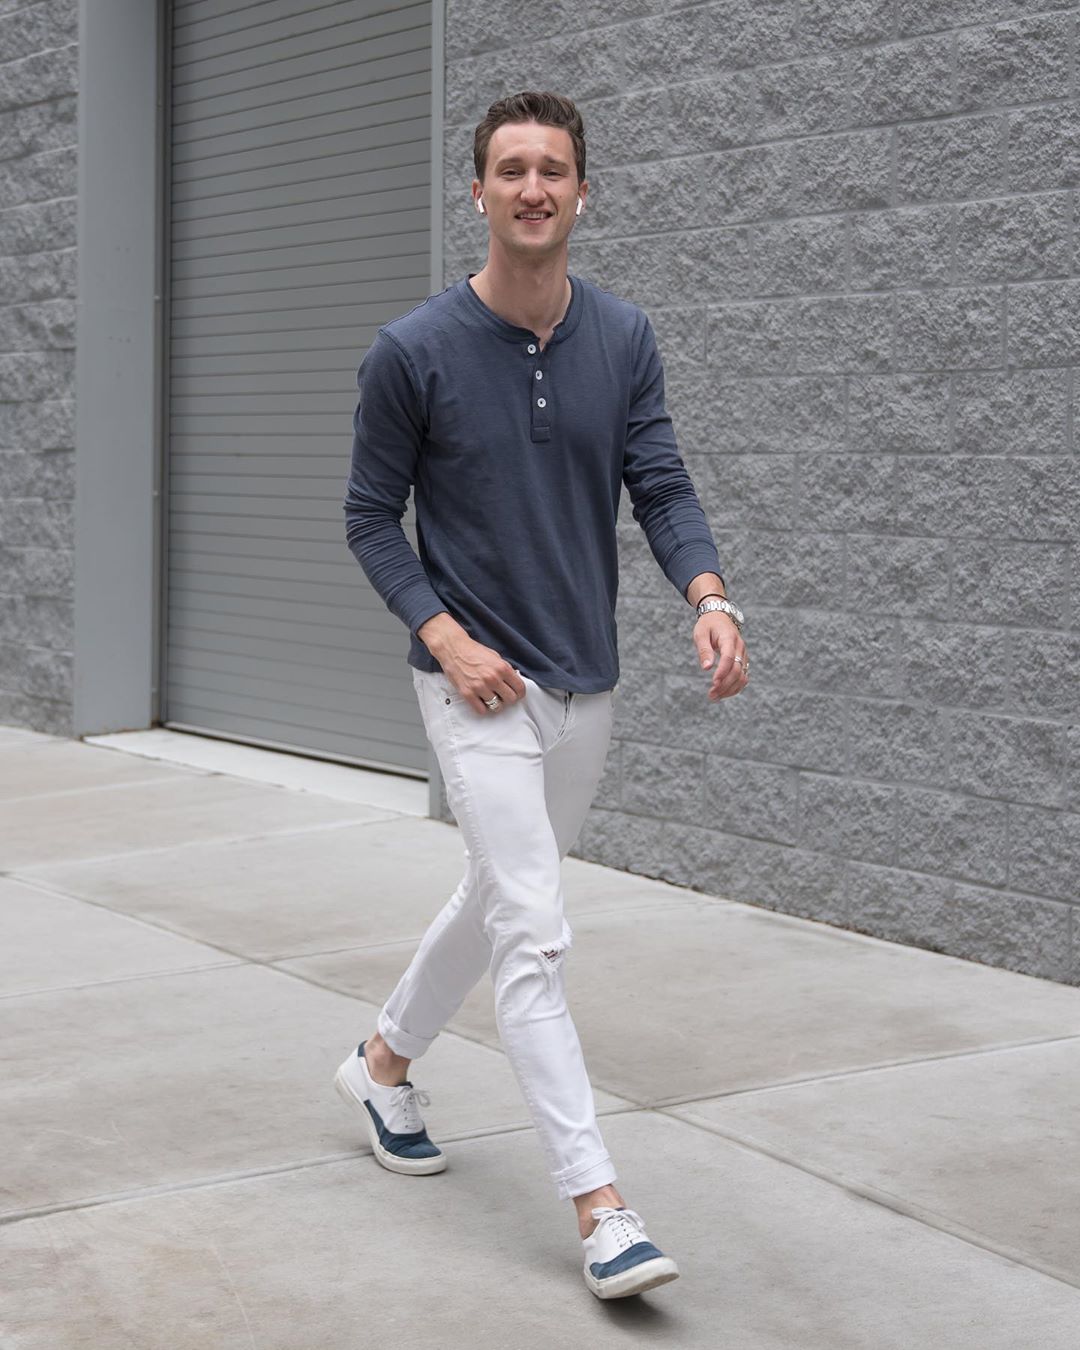 8 cách phối quần jeans trắng phong cách từ fashionista marcel floruss